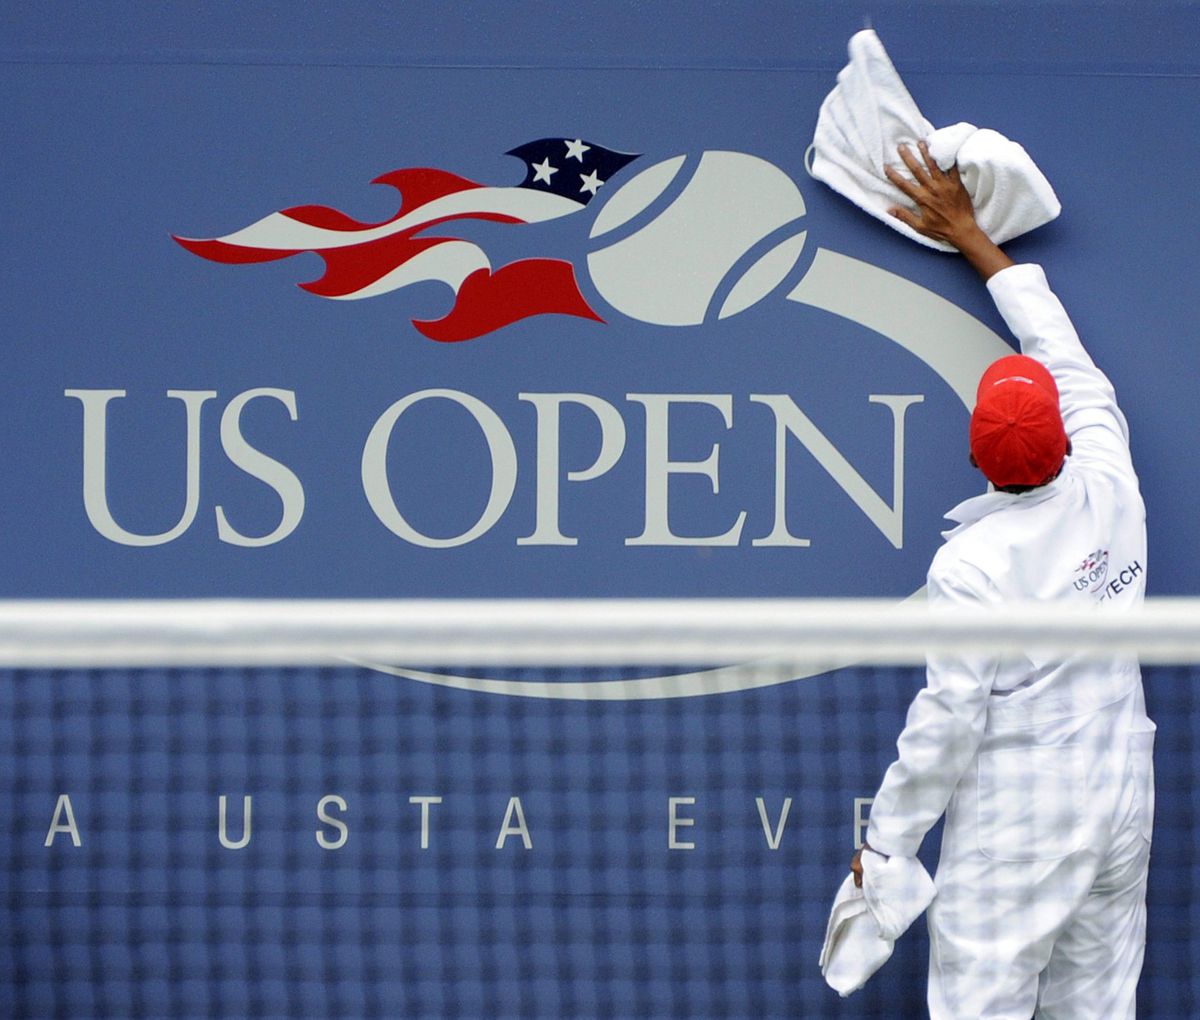 US Open wil met flappen strooien en kondigt grootste prijzenpot ooit aan